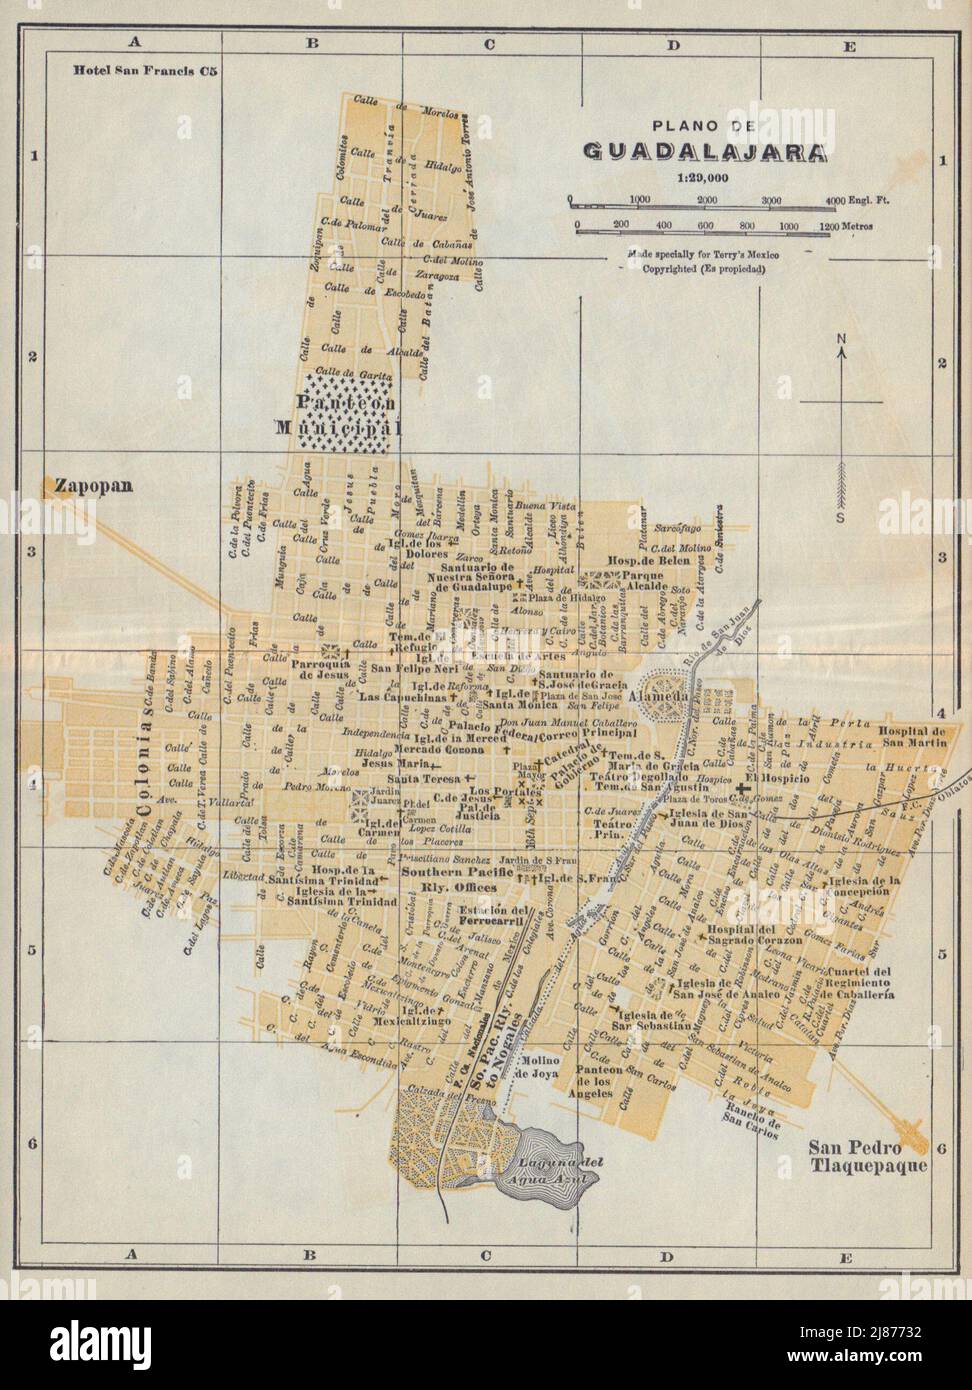 Plano de GUADALAJARA, Mexico. Mapa de la ciudad. City/town plan 1938 old Stock Photo